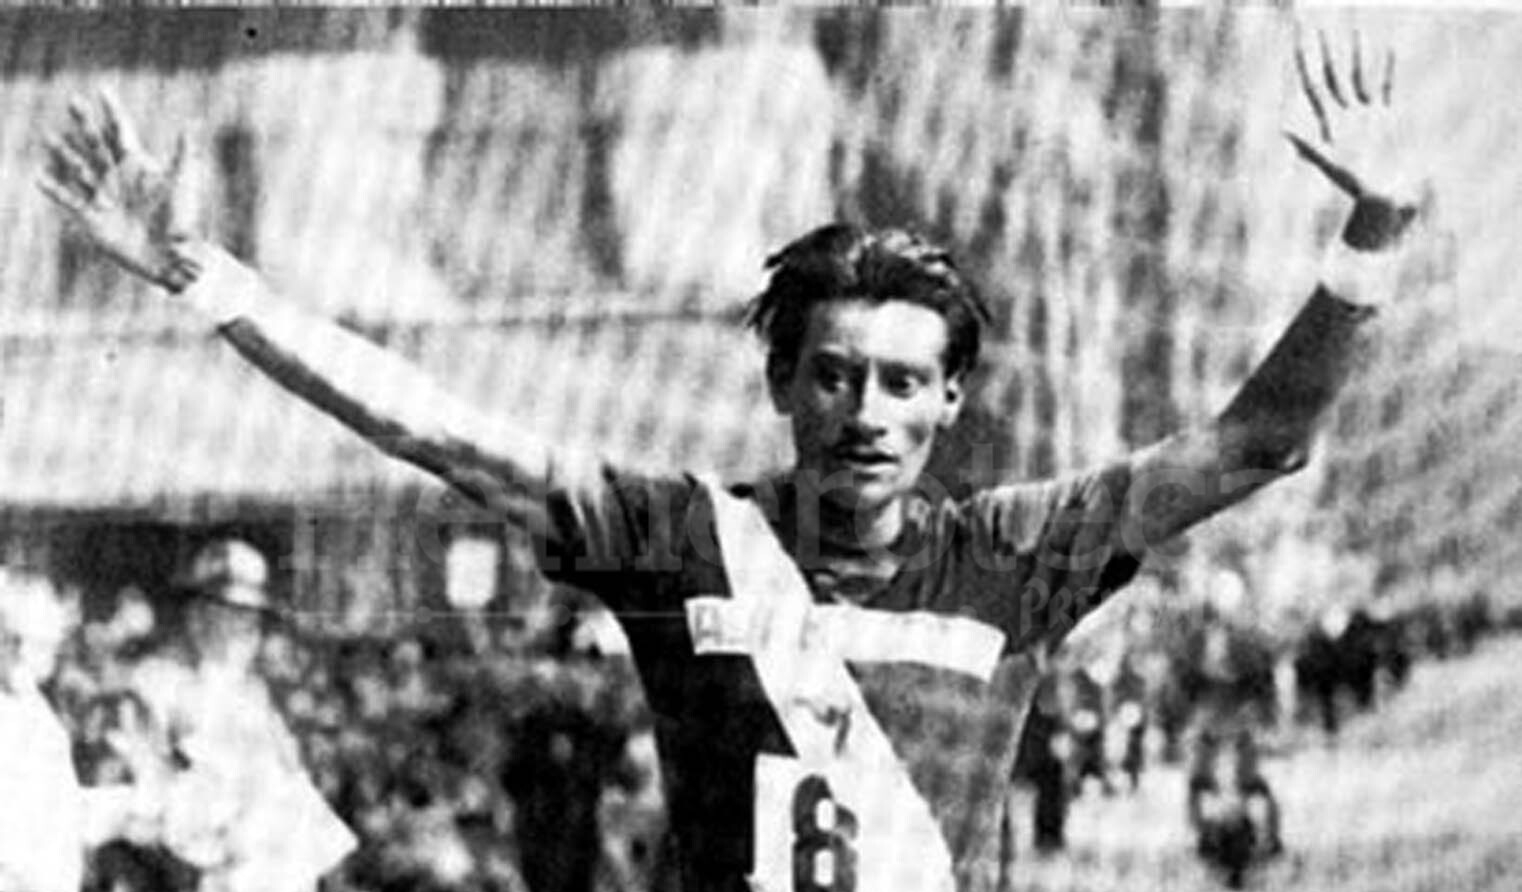 Doroteo Guamuch sorprendió al mundo al ganar en 1952 la maratón de Boston, levantando el nombre de Guatemala en el campo del deporte. (Foto Prensa Libre: Hemeroteca PL)